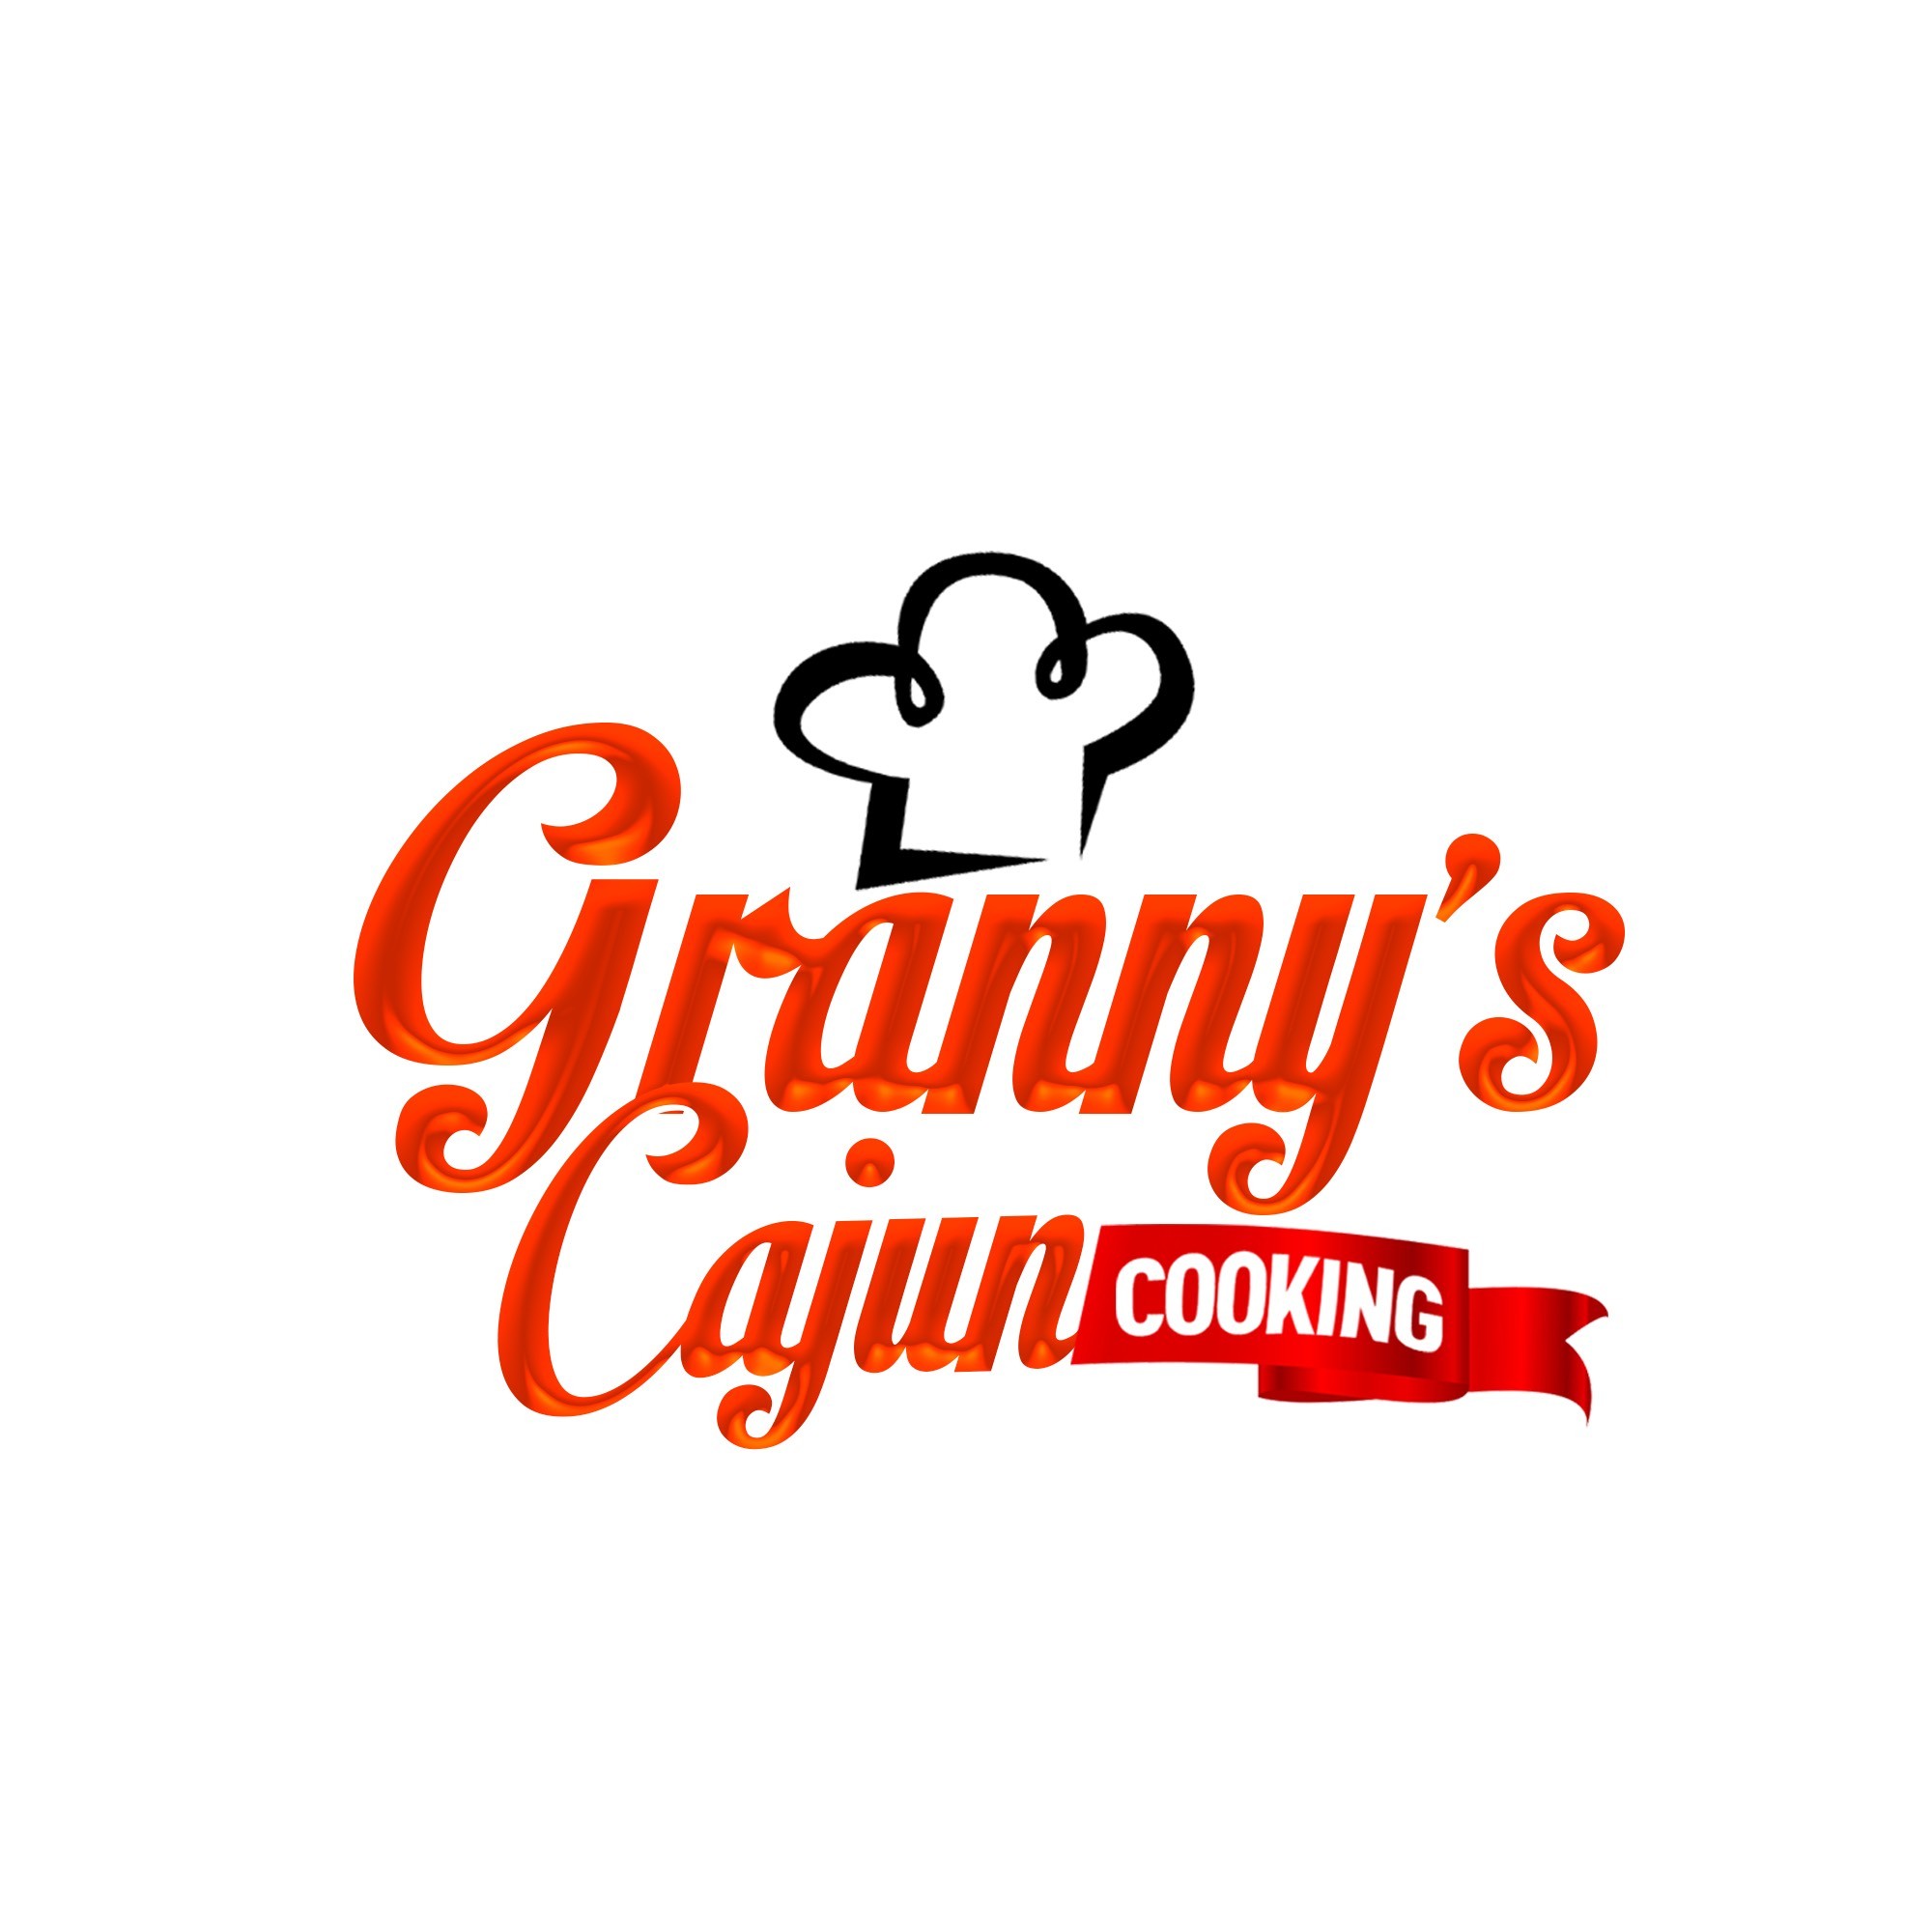 Grannys Cajun Cooking LLC